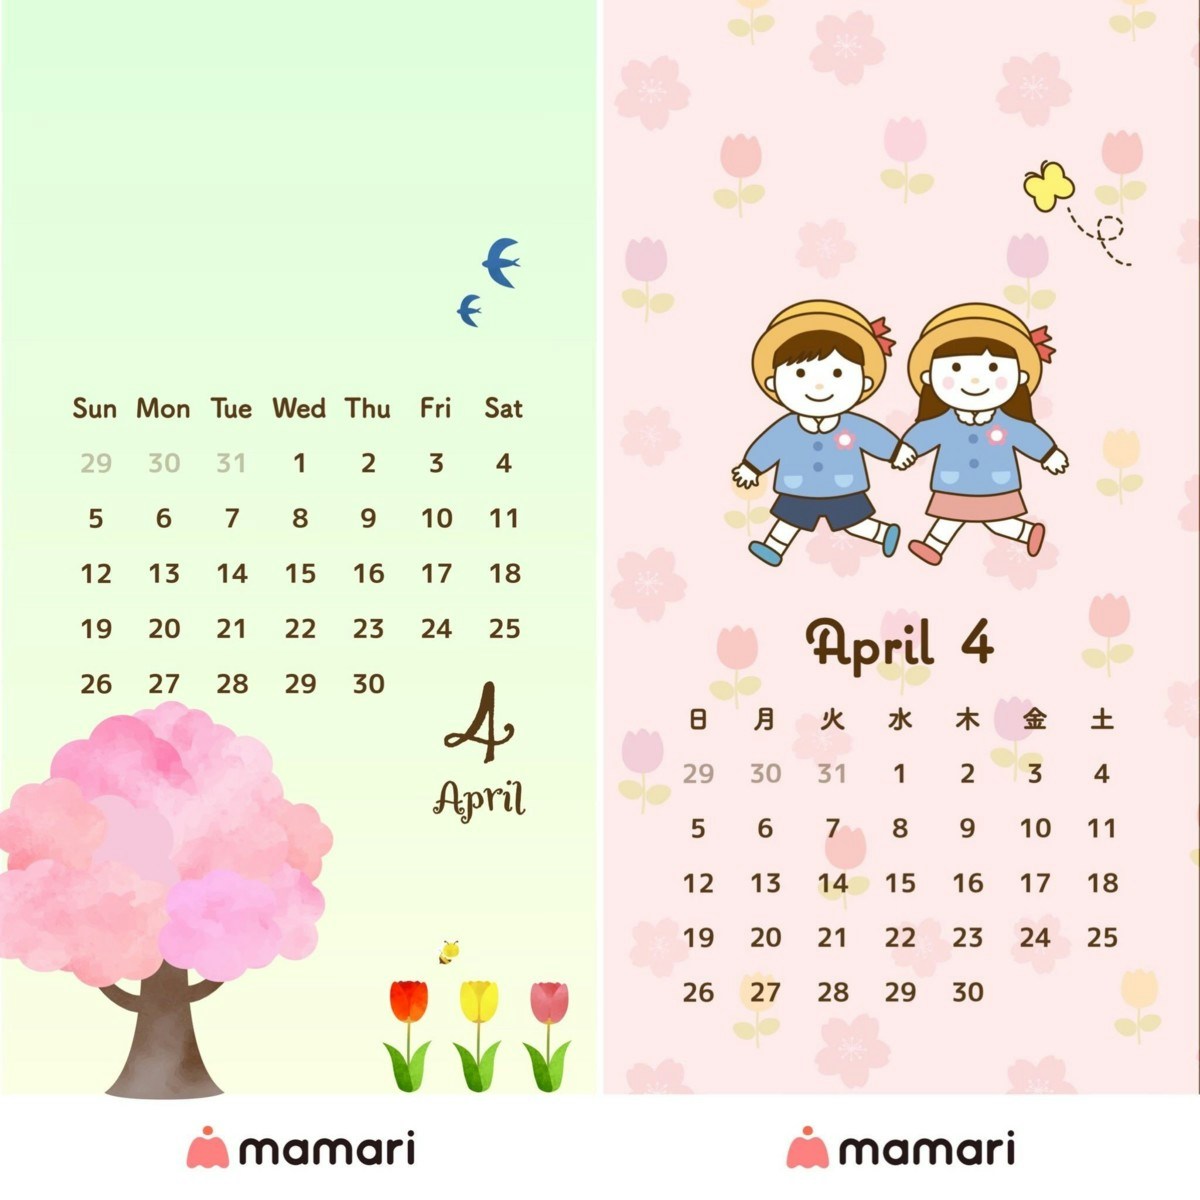 ママリオリジナル 2020年4月のカレンダー壁紙を無料プレゼント ママリ